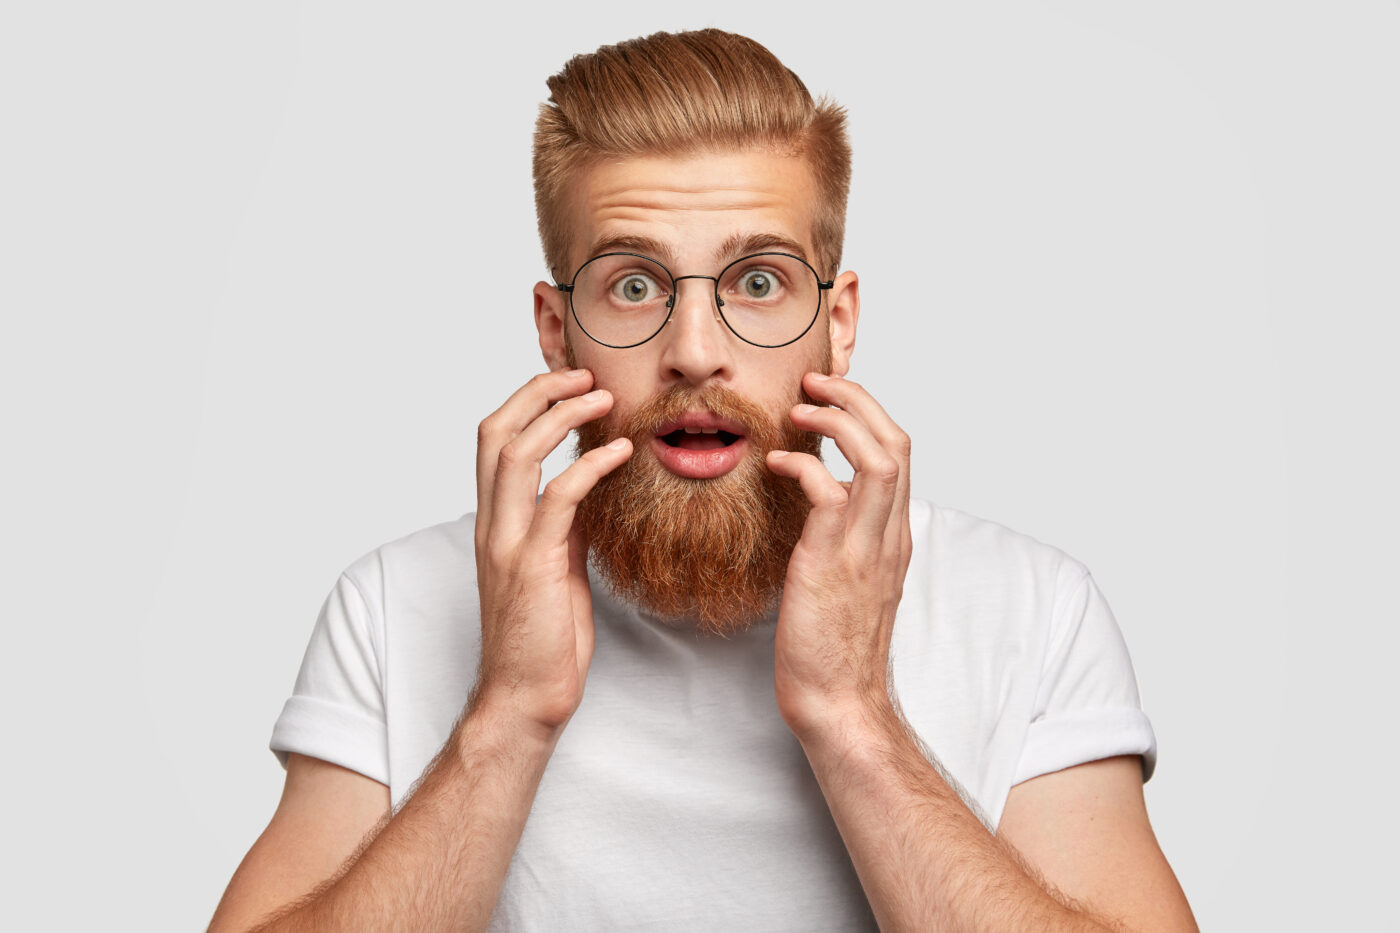 Óleo de rícino: a bomba natural para uma barba cheia e brilhante